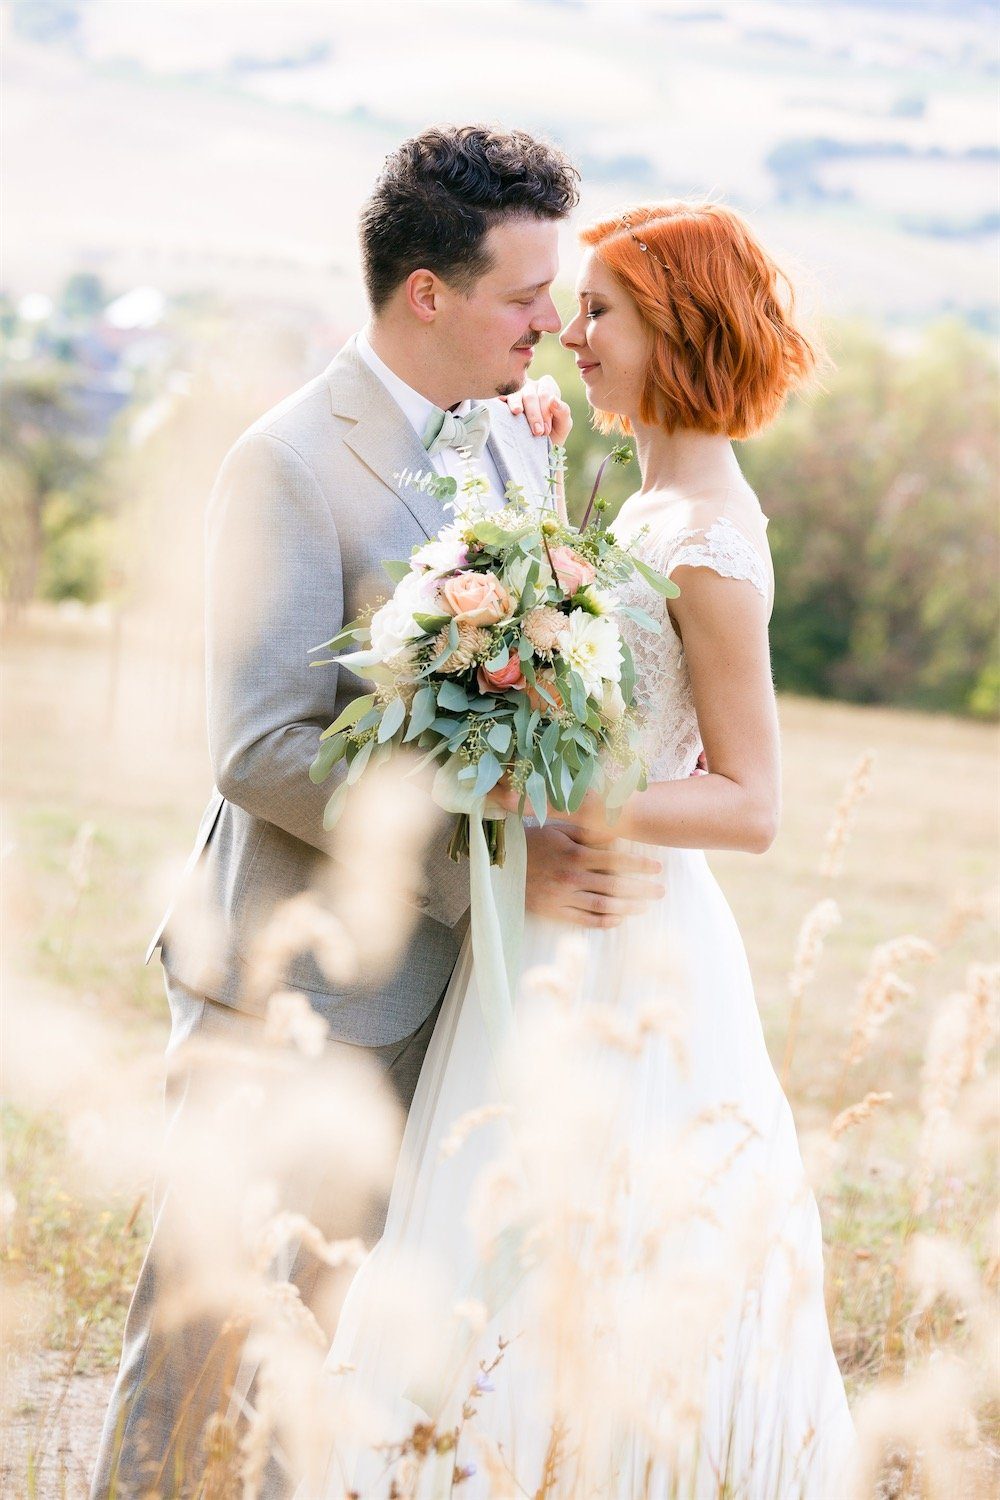 Hochwertige Hochzeitsbilder: Liebevolle, natürliche Augenblicke, emotionale Hochzeitsfotografie für unvergessliche Eindrücke und Erinnerungen.